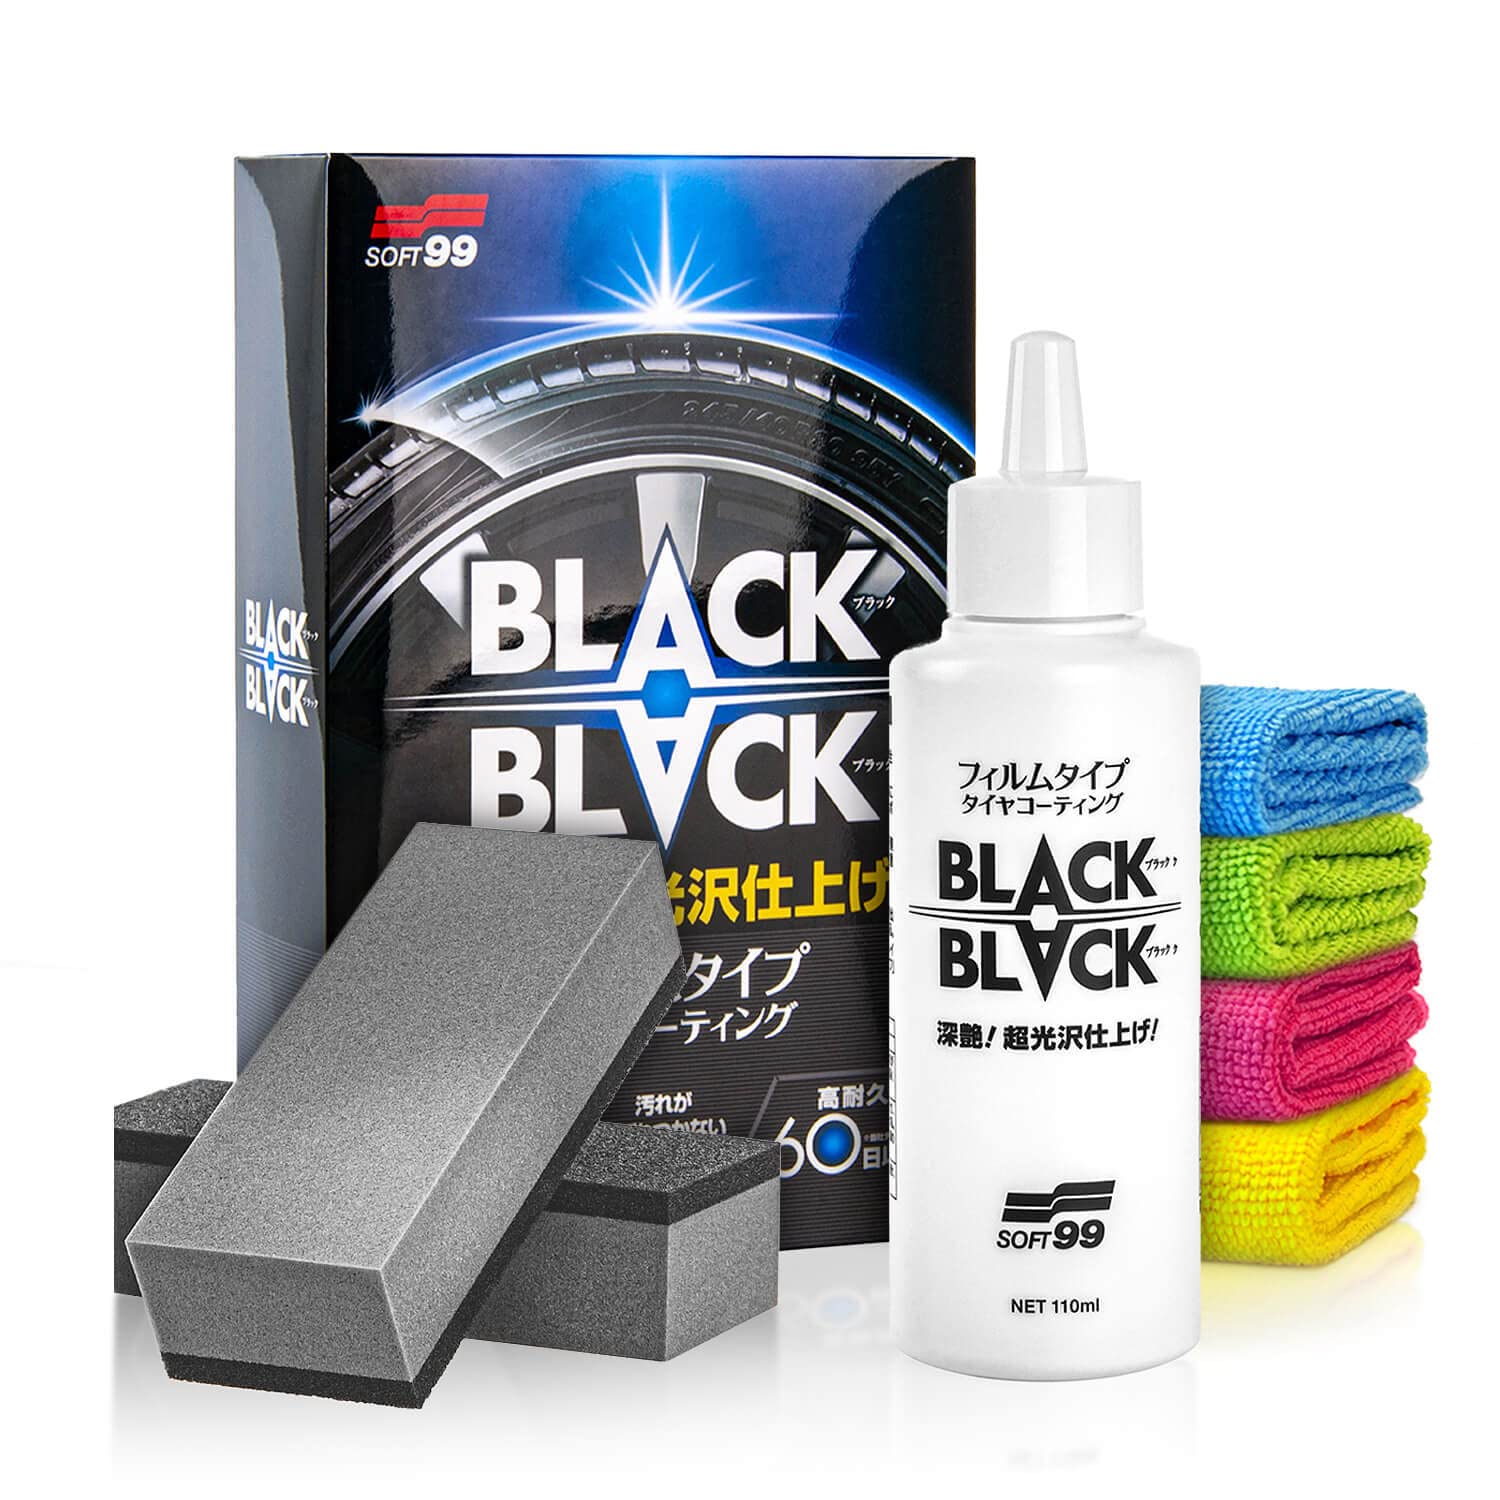 Soft99 Black Black Reifendressing (110ml) Auto Reifenpflege Coating Set - der ultimative brandneu Look für deine Auto Reifen mit Applikator - Reifenglanz, Gummipflege, Reifen Tire Dressing | 8-teilig von Shiny Freaks